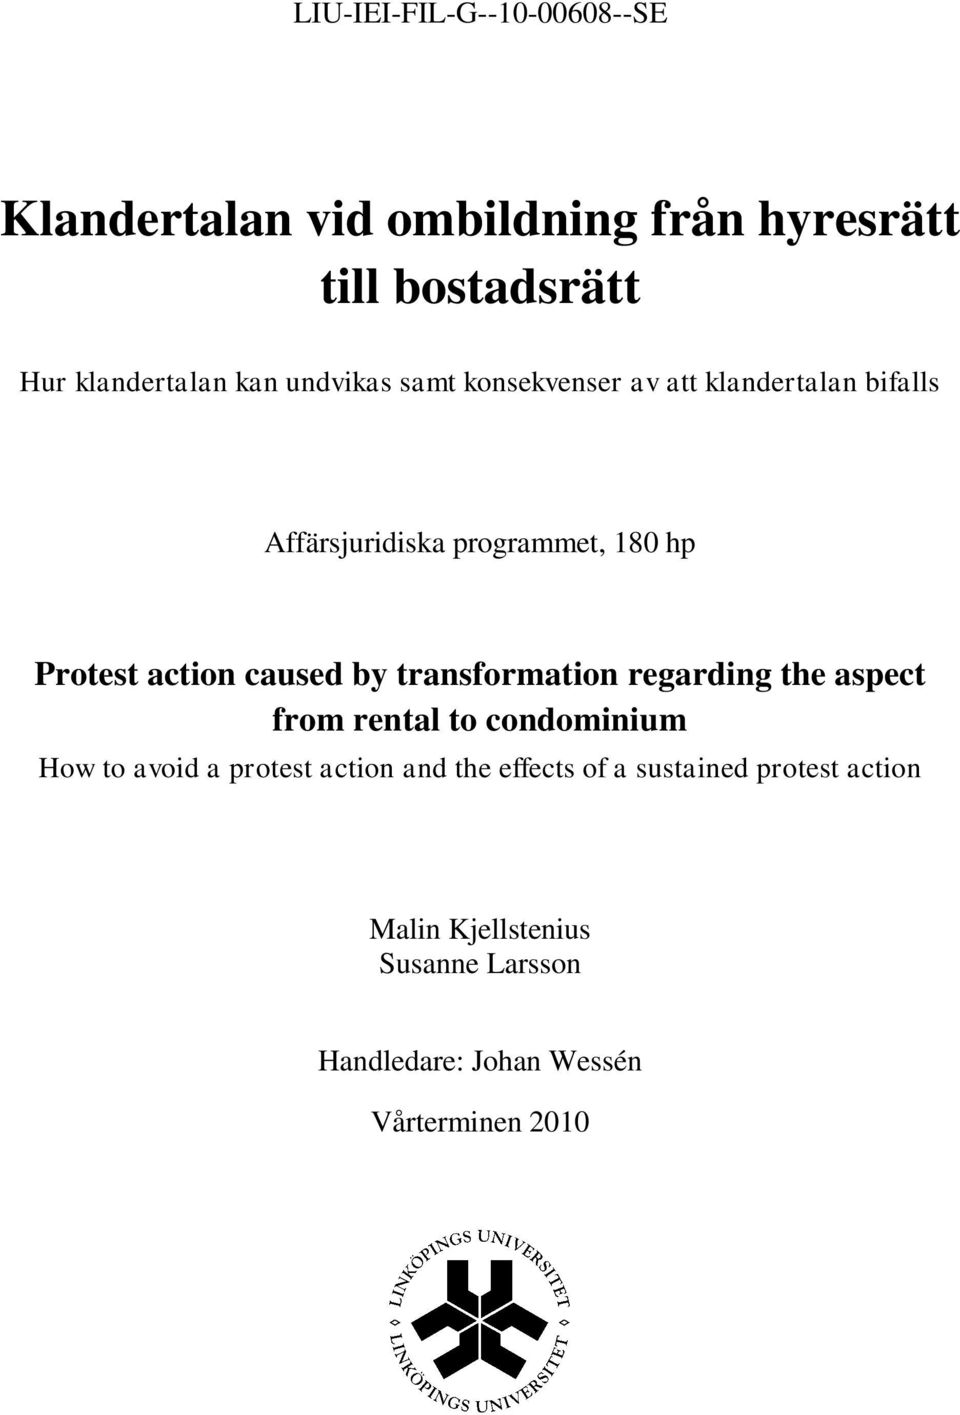 Klandertalan vid ombildning från hyresrätt till bostadsrätt - PDF ...